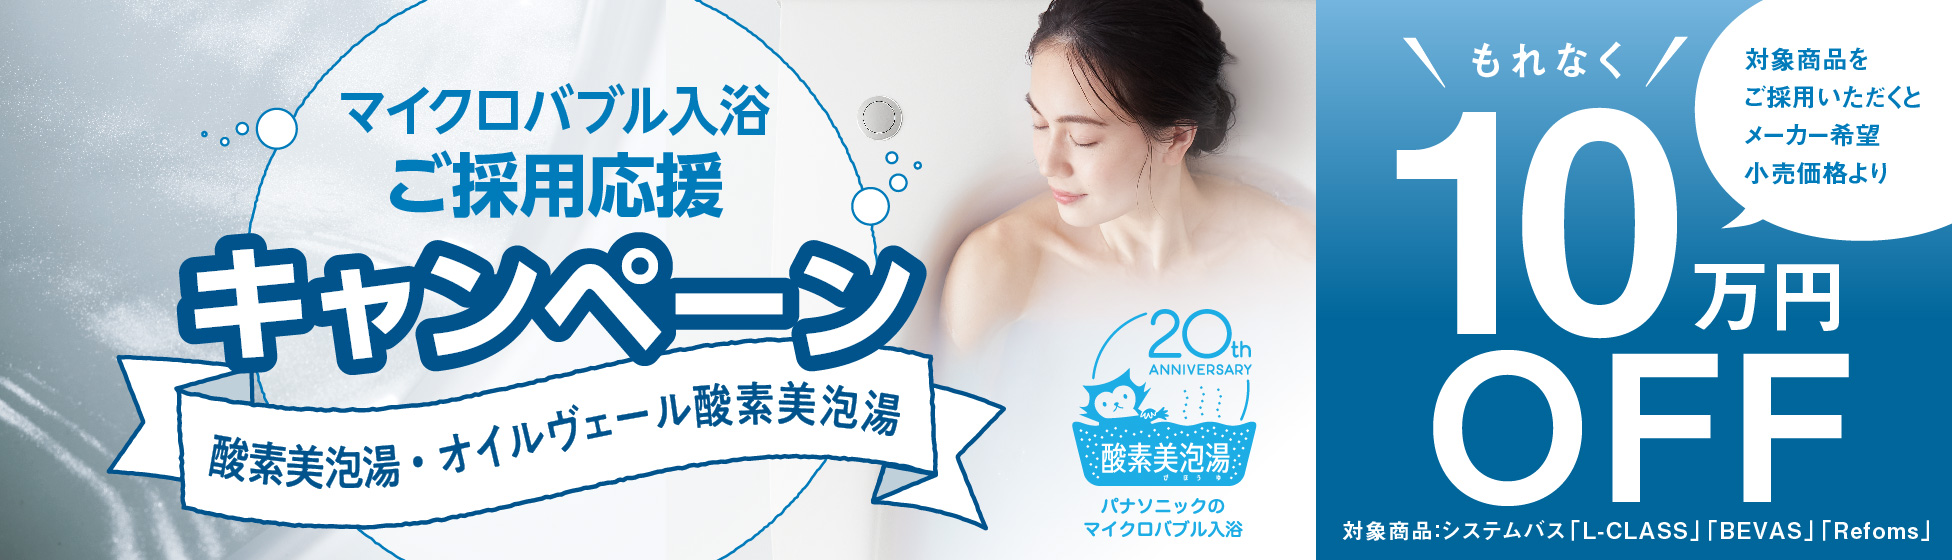 マイクロバブル入浴 ご採用応援キャンペーン